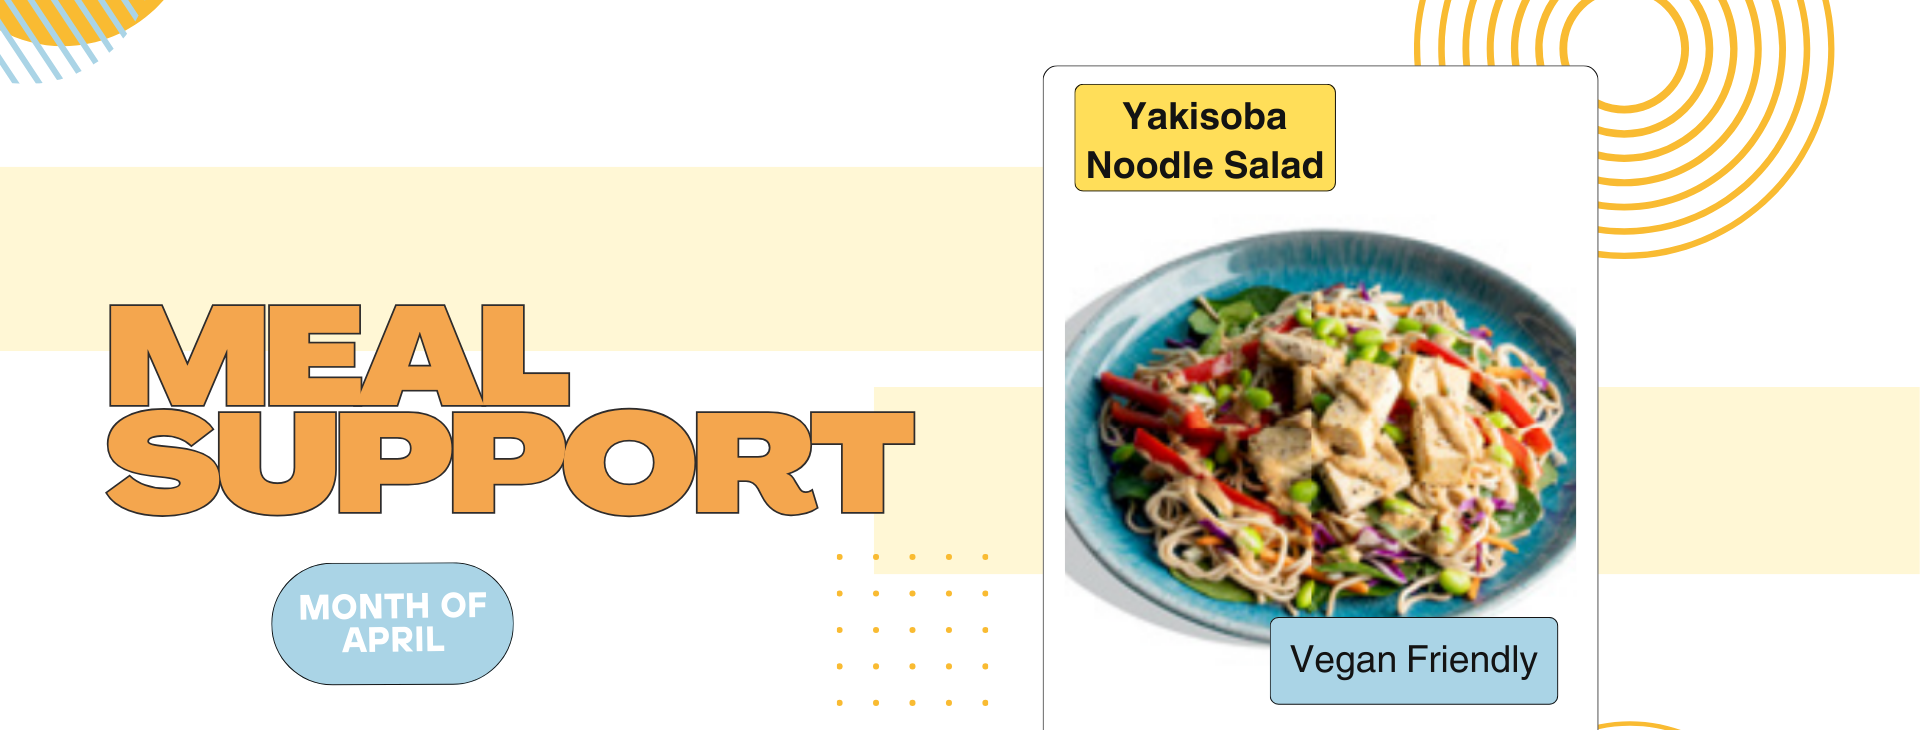 Meal Support- Yakisoba Noodles